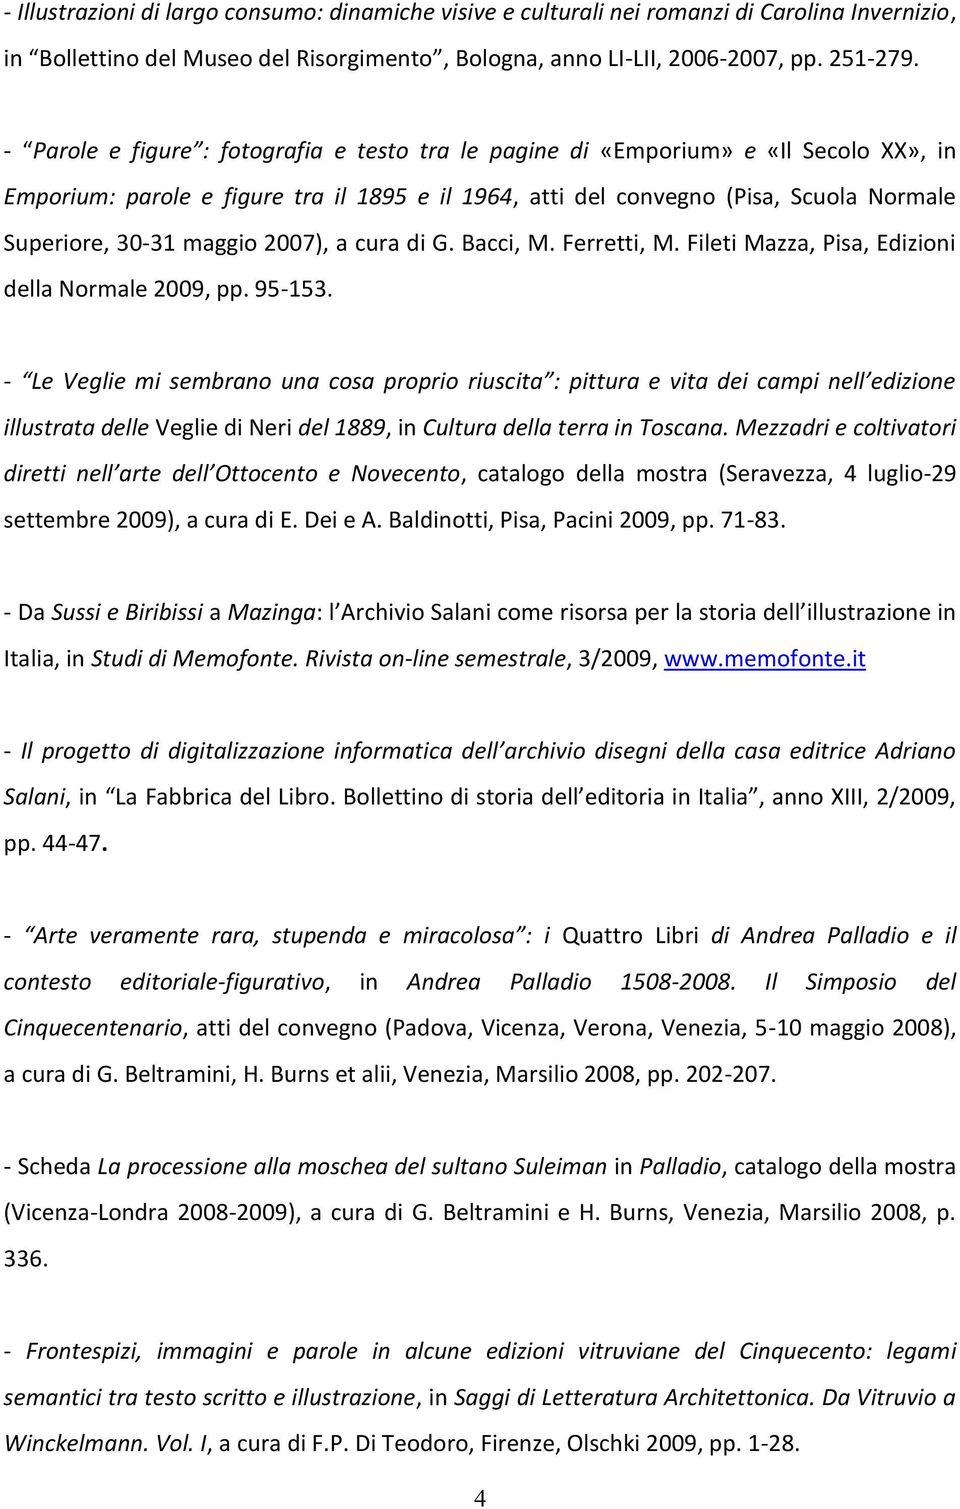 maggio 2007), a cura di G. Bacci, M. Ferretti, M. Fileti Mazza, Pisa, Edizioni della Normale 2009, pp. 95-153.